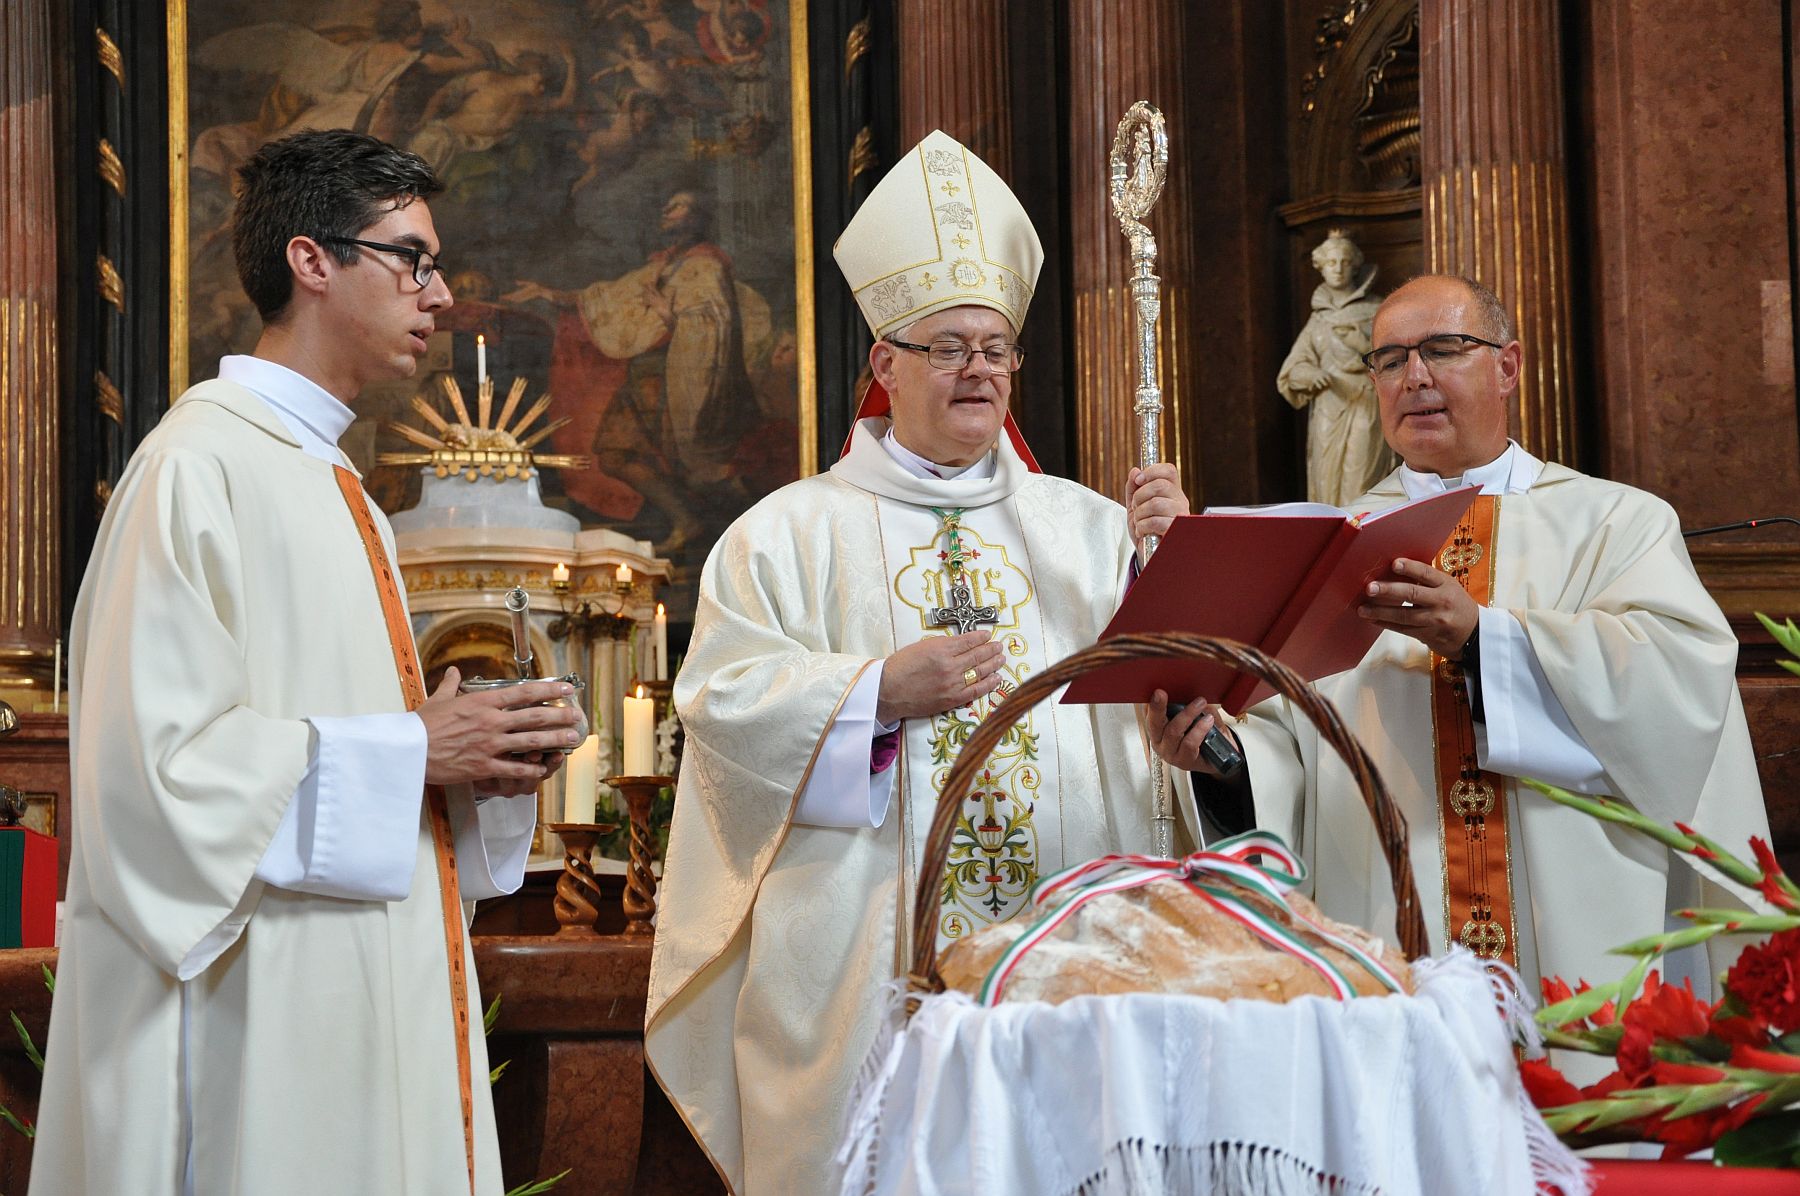 Püspöki mise és kenyérmegáldás Szent István király ünnepén